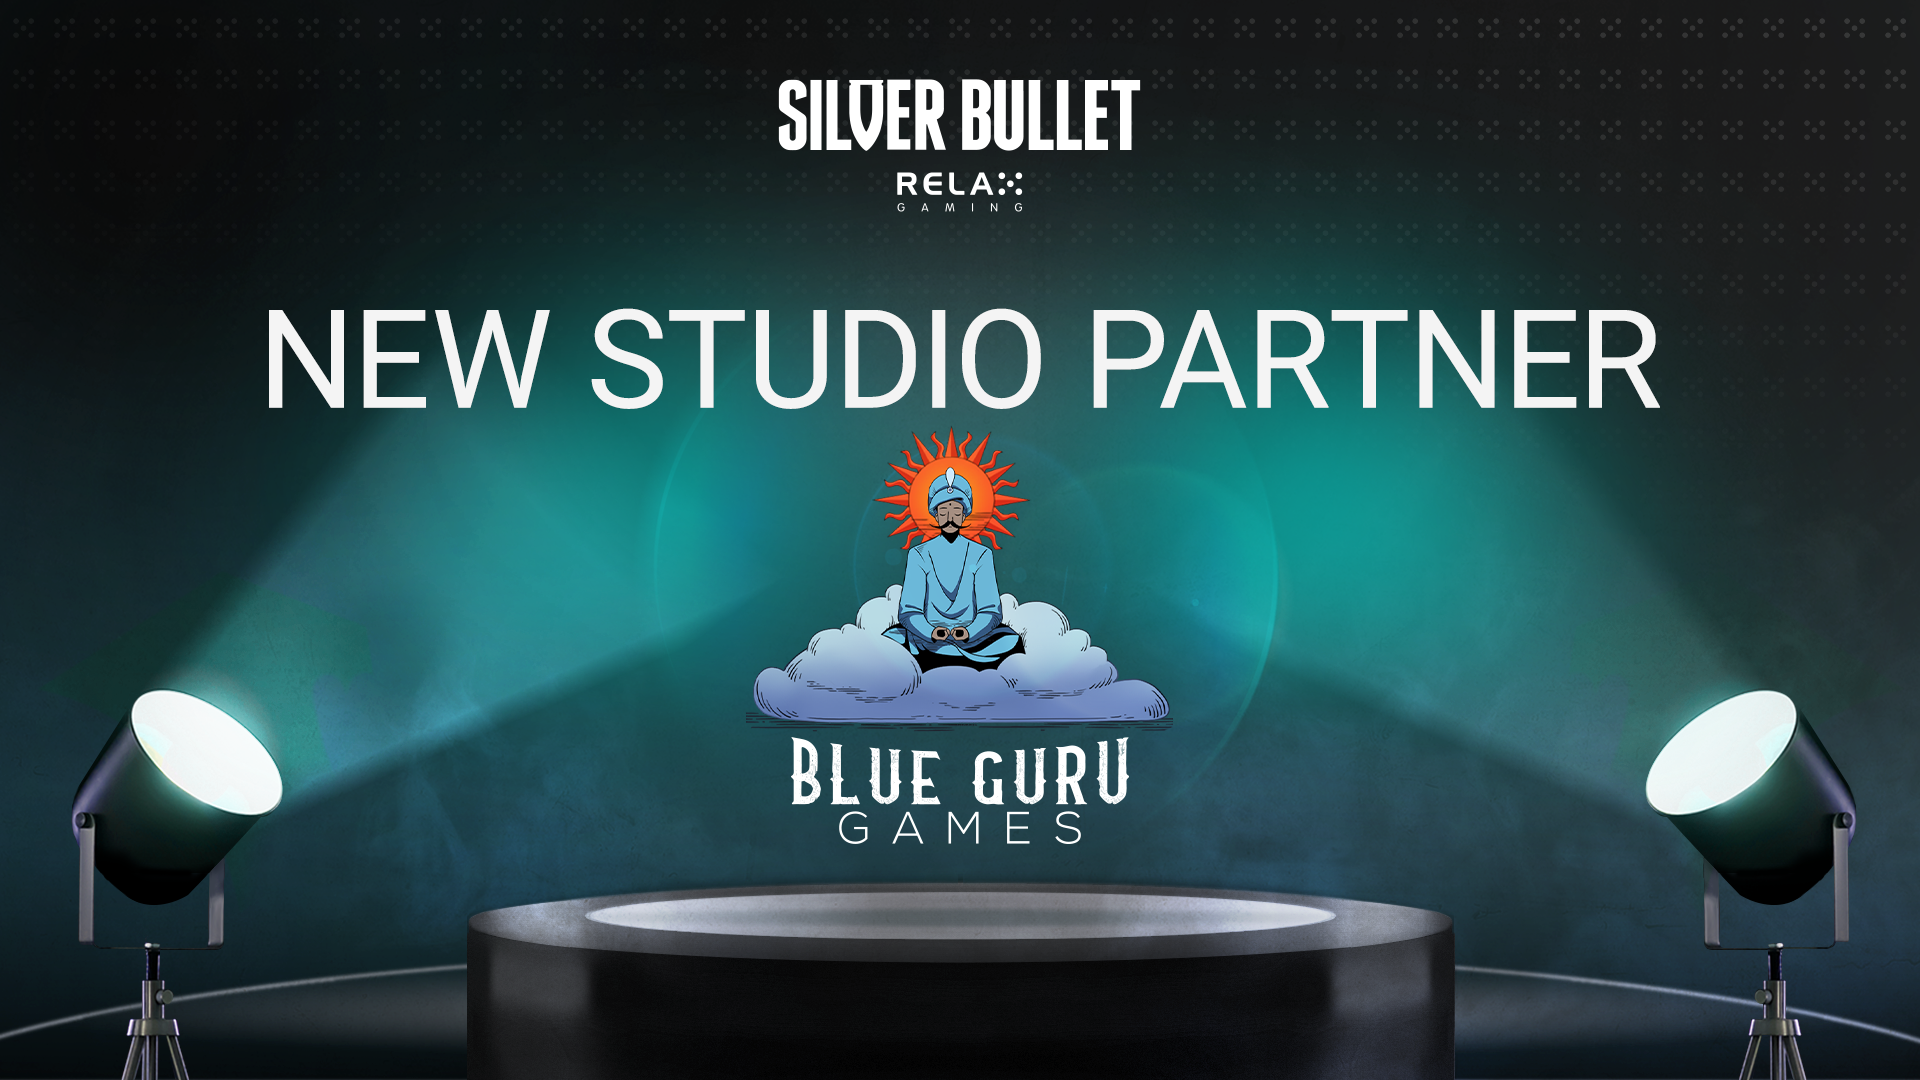 Relax Gaming brings Blue Guru on board as Silver Bullet partner